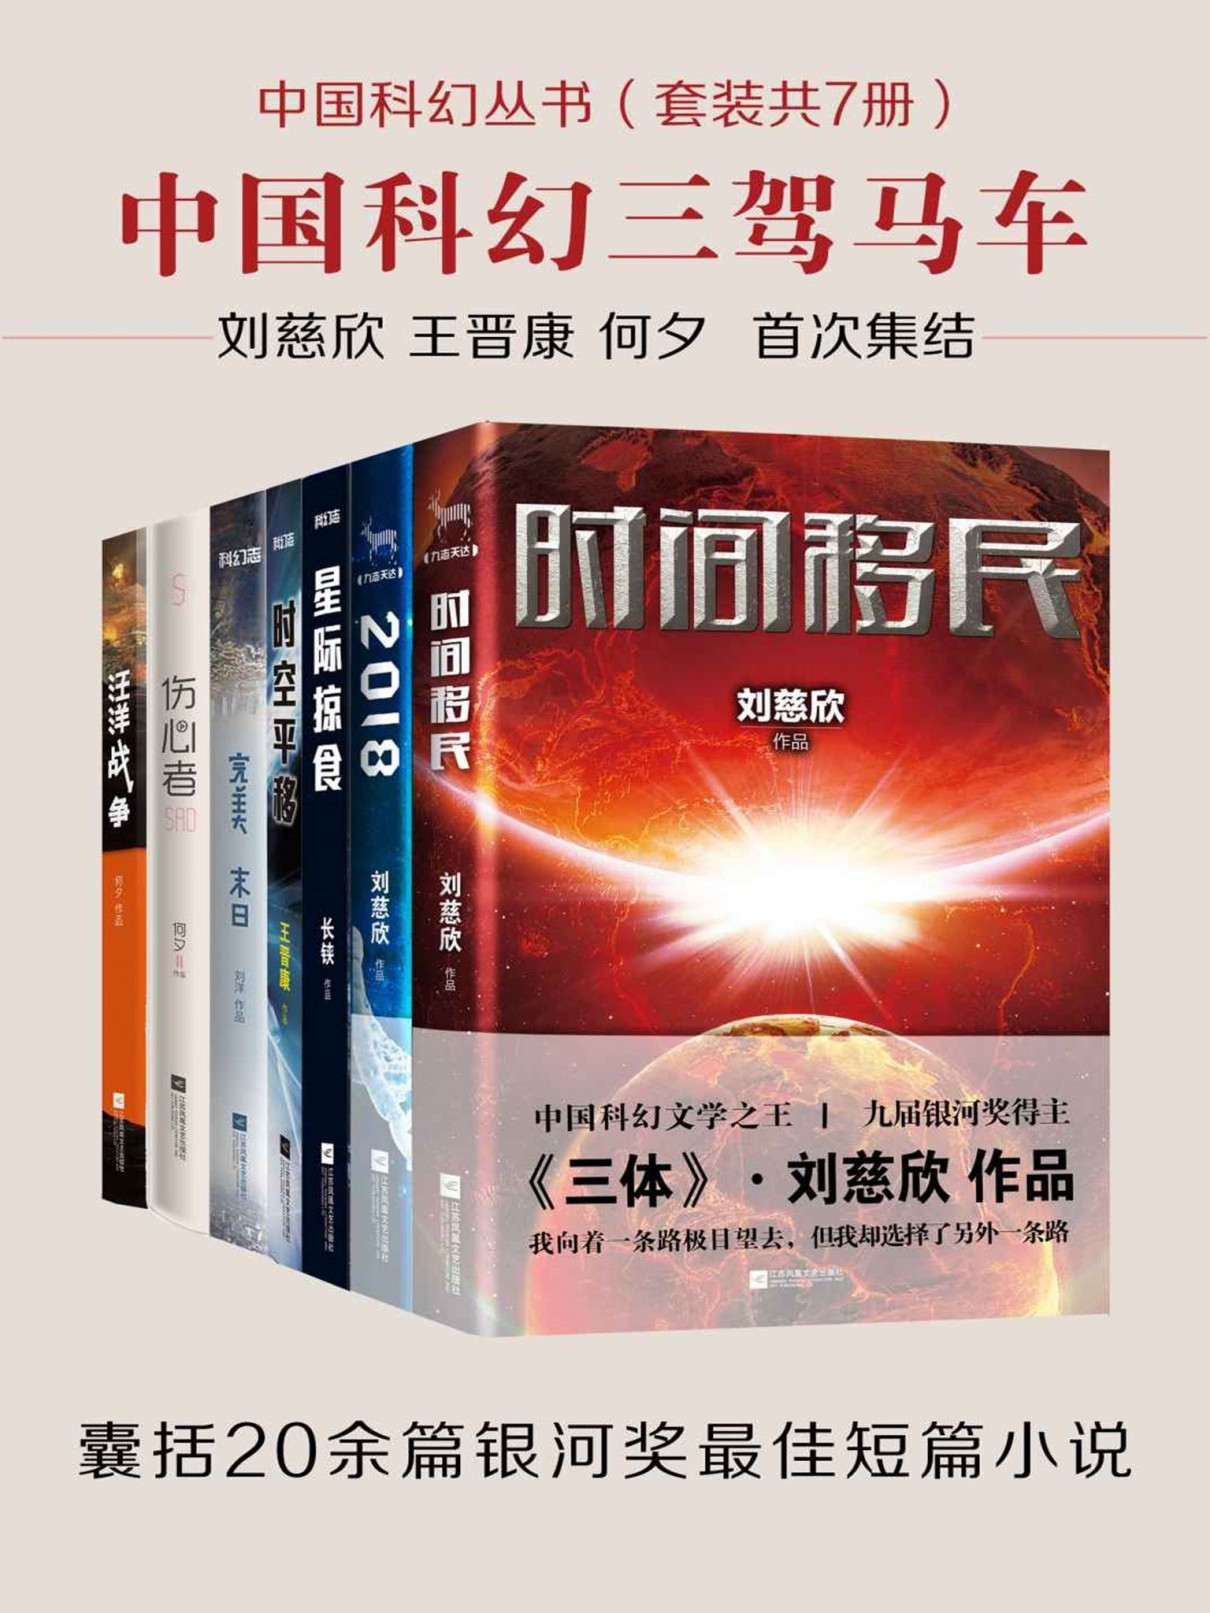 [小说类] [科幻恐怖] [其它] [网盘下载] 《中国科幻丛书》套装共7册 囊括20余篇银河奖最佳短篇小说[epub]